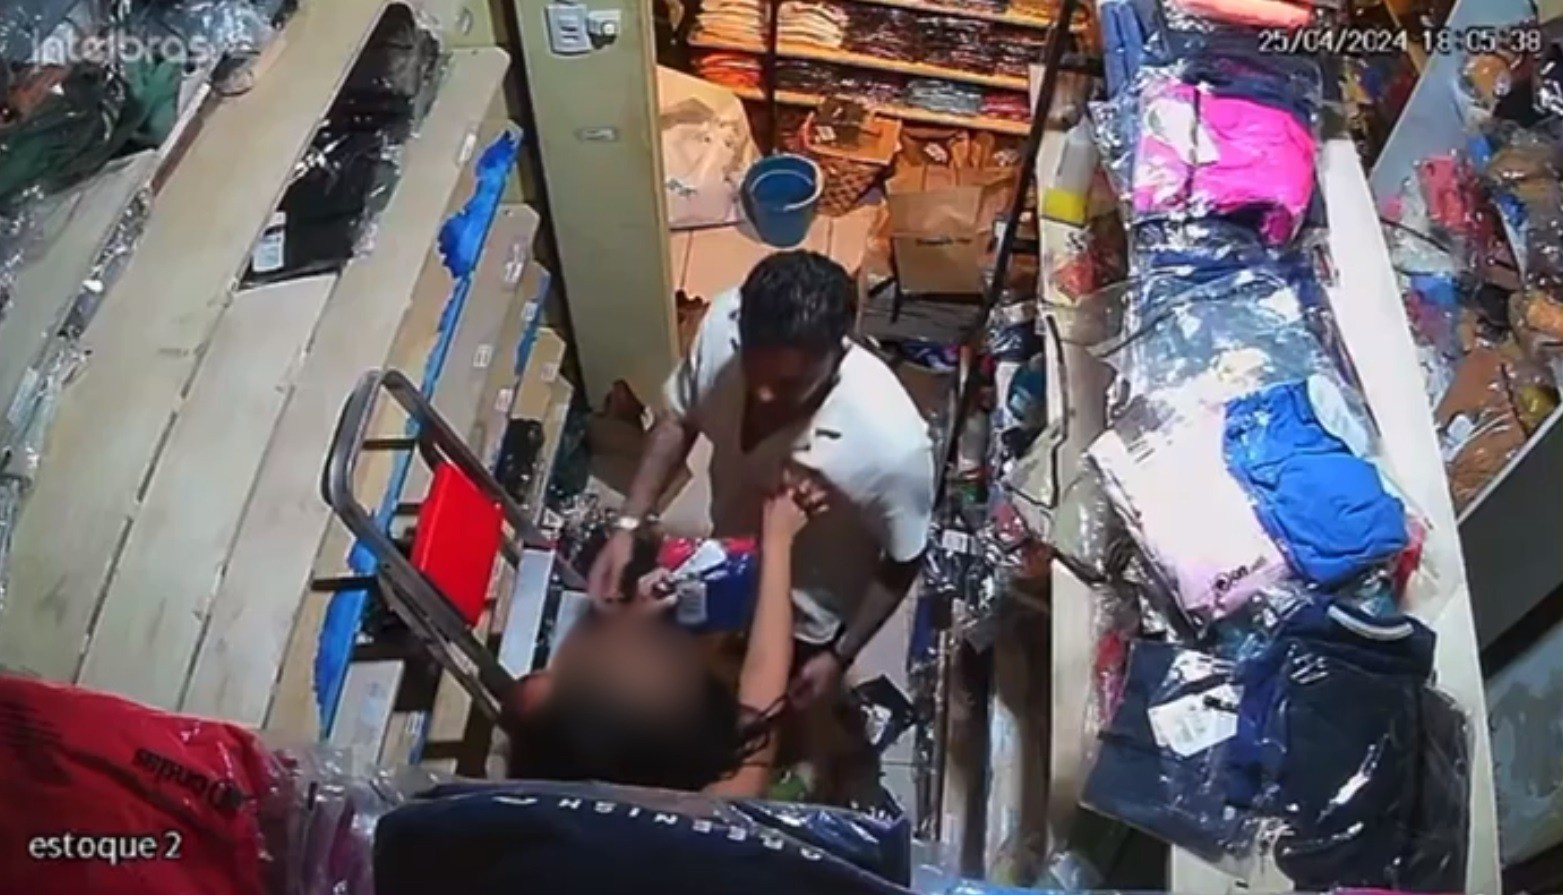 Cliente tenta abraçar vendedora à força e faz acenos sexuais usando apenas sunga em loja no Ceará